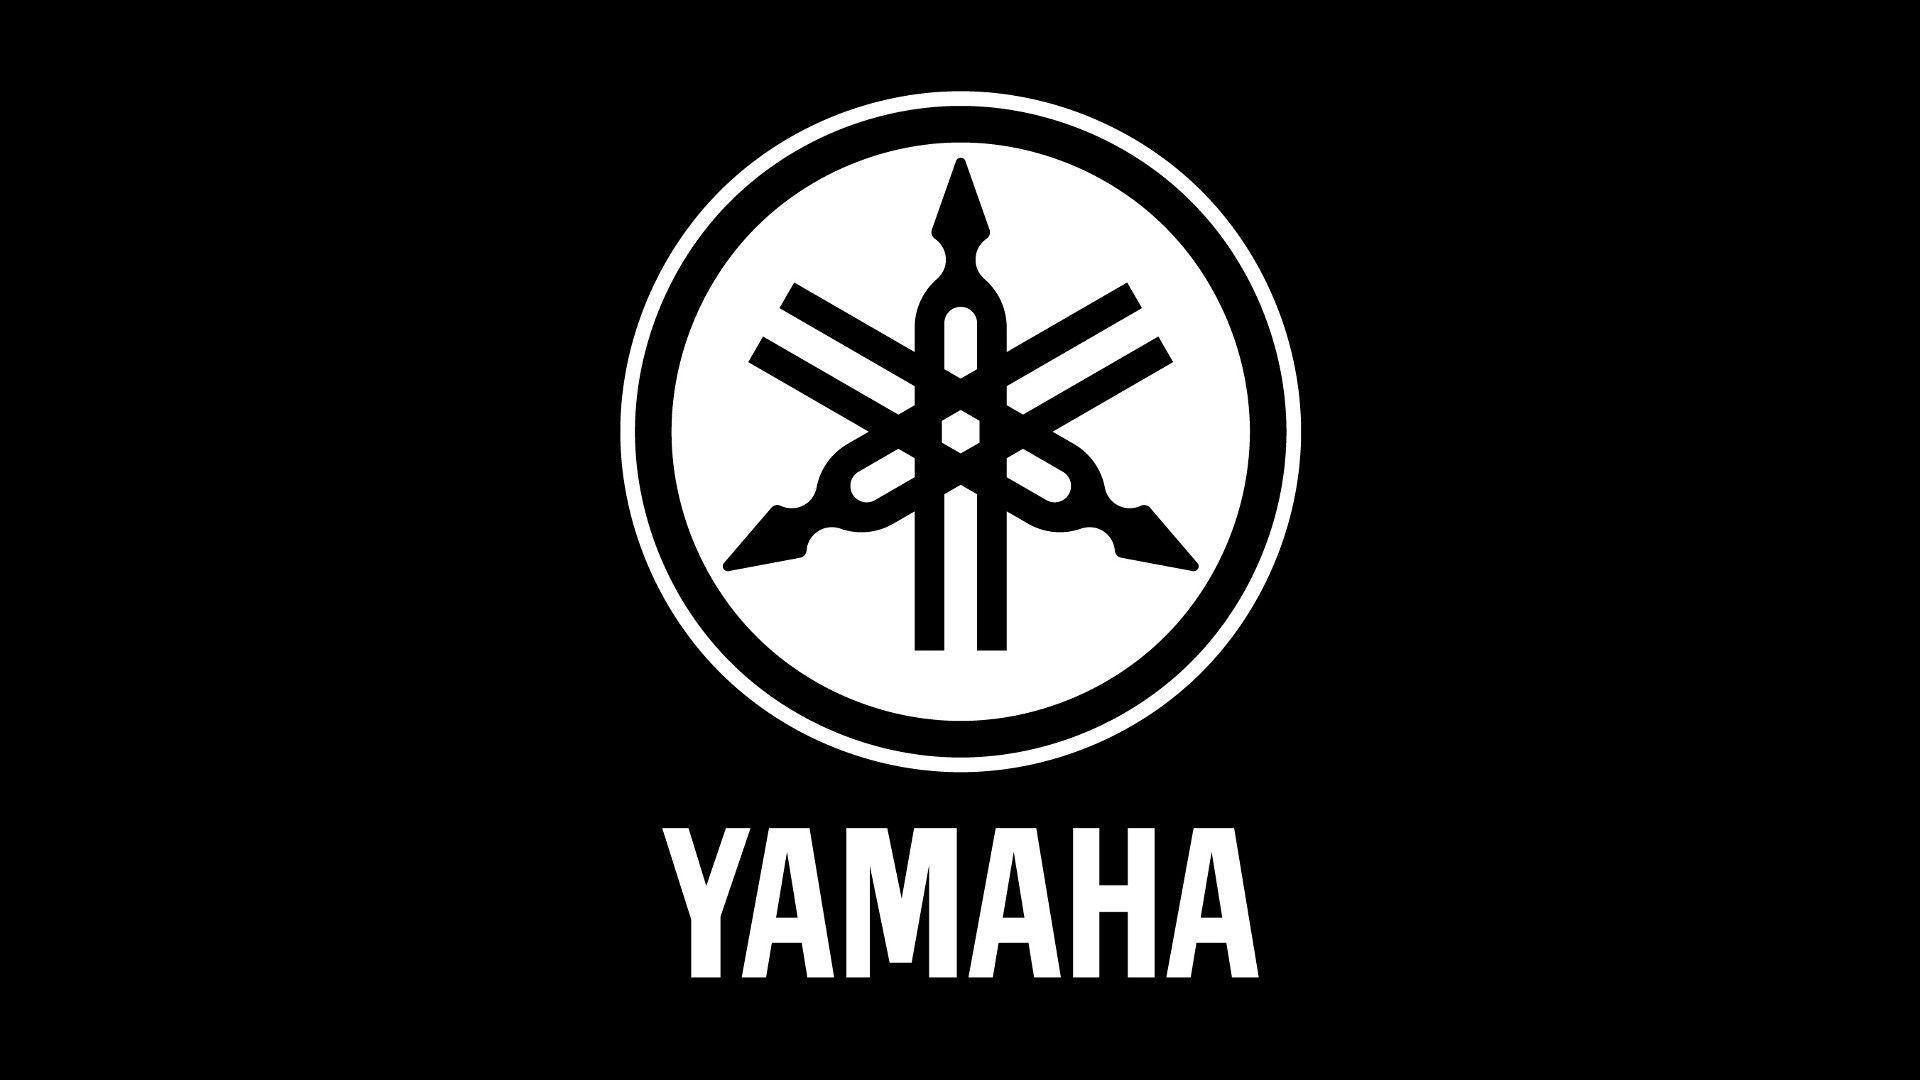 Yamaha Logo Wallpapers - Top Free Yamaha Logo Backgrounds - WallpaperAccess